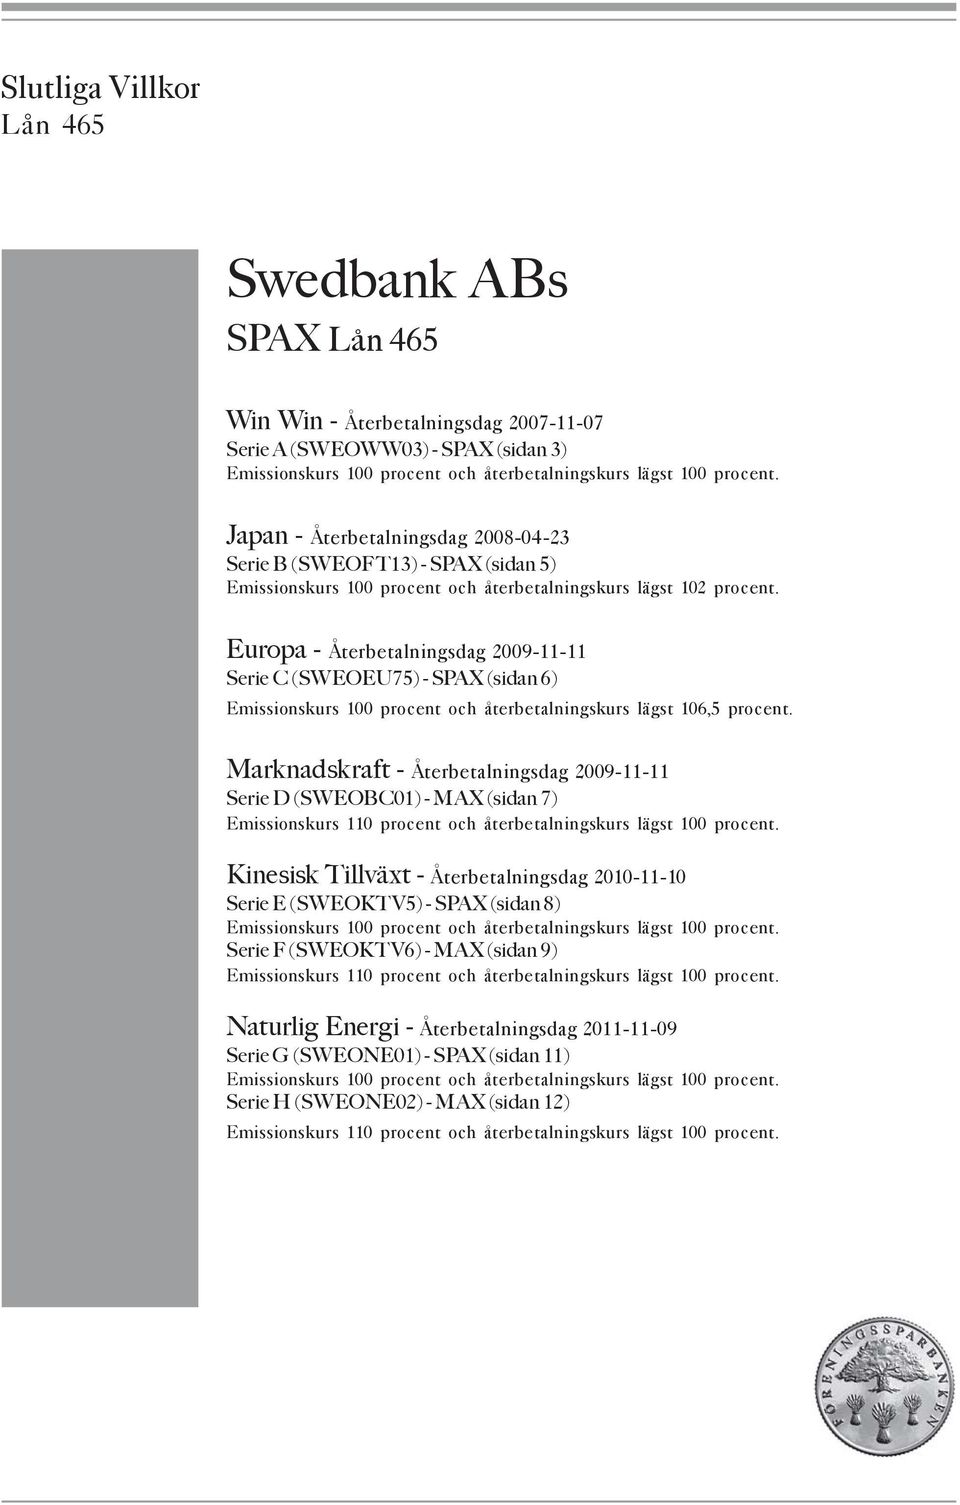 Europa - Återbetalningsdag 2009-11-11 Serie C (SWEOEU75) - SPAX (sidan 6) Emissionskurs 100 procent och återbetalningskurs lägst 106,5 procent.